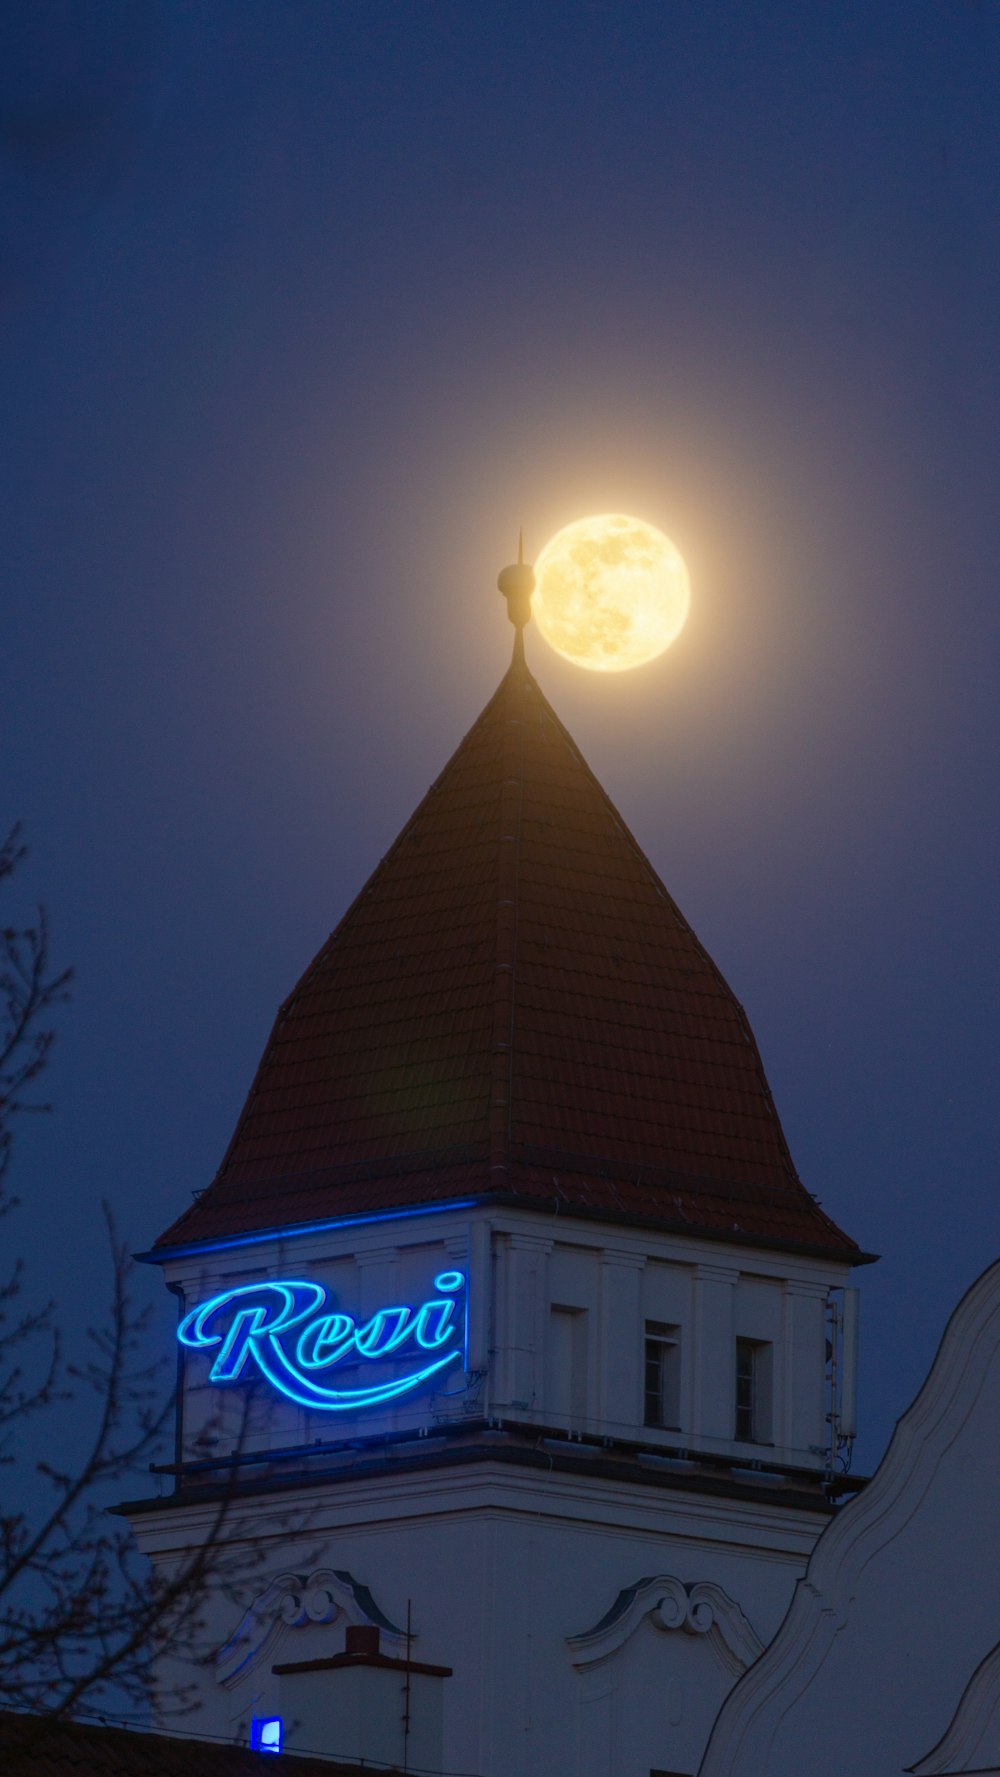 時計塔のある建物に満月が昇る